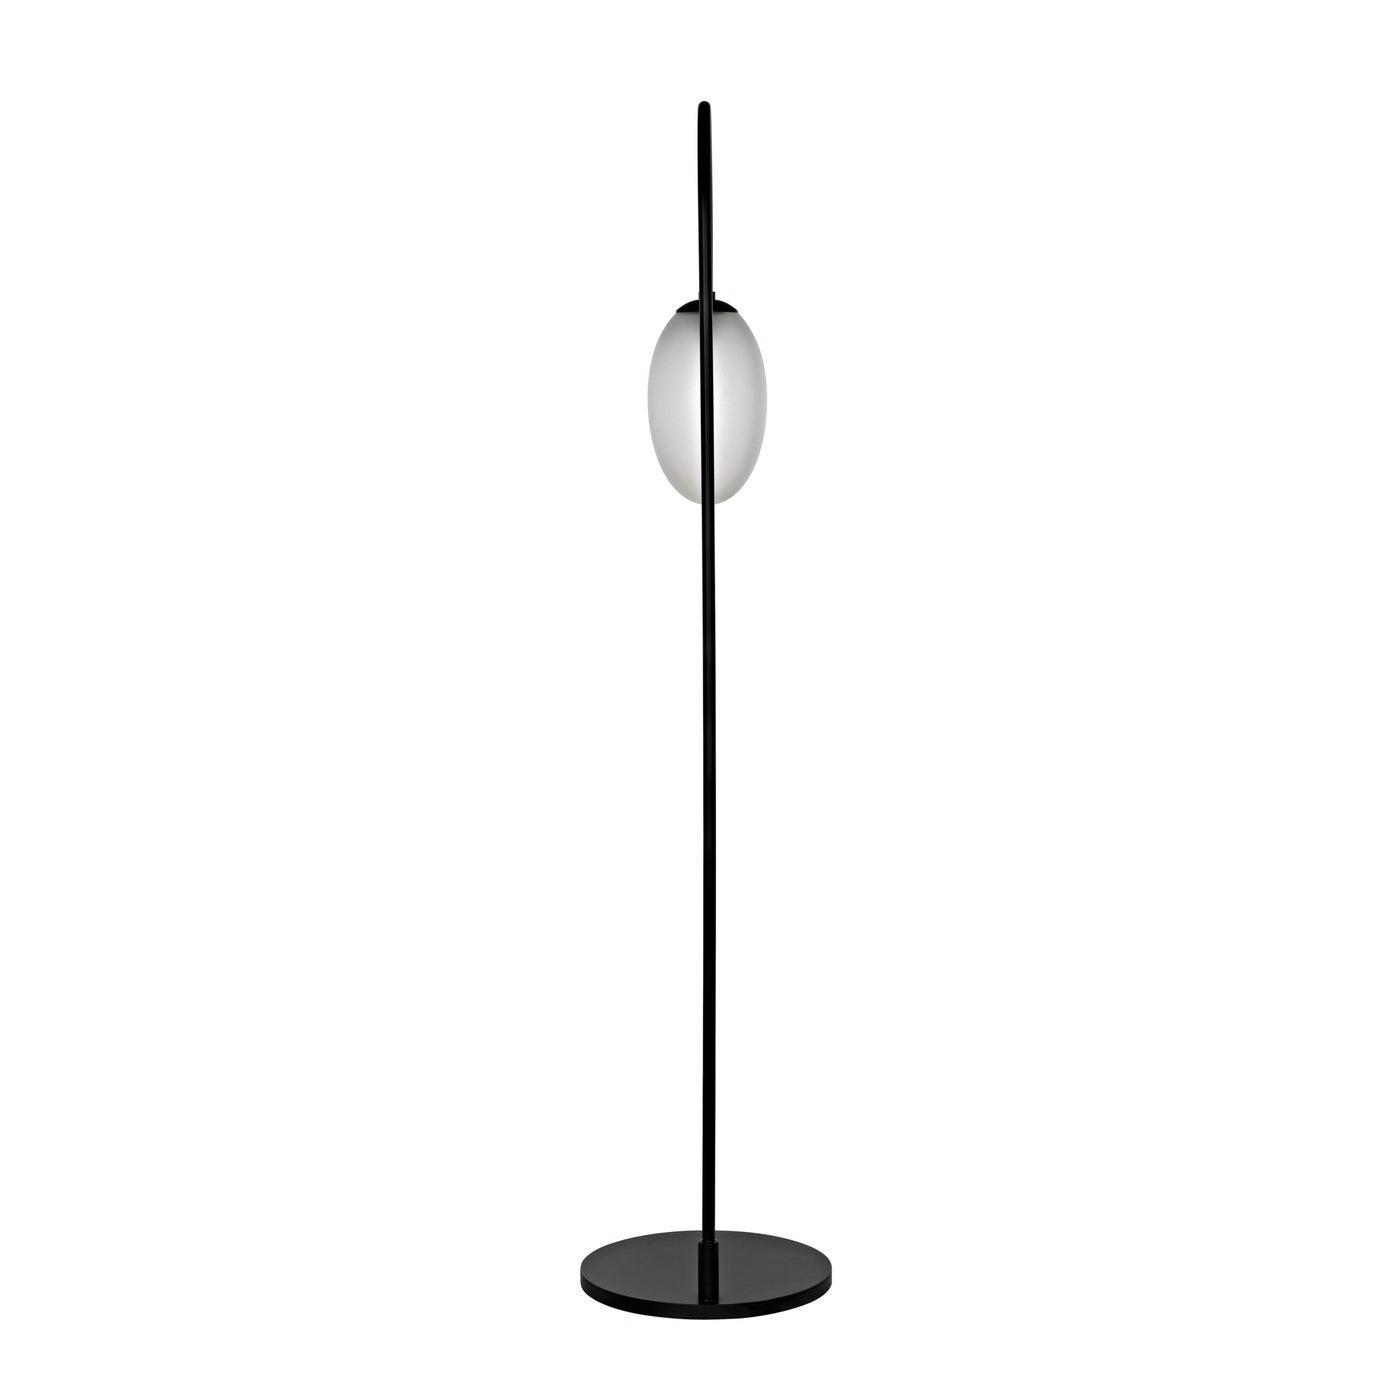 Swan Floor Lamp, Black Steel